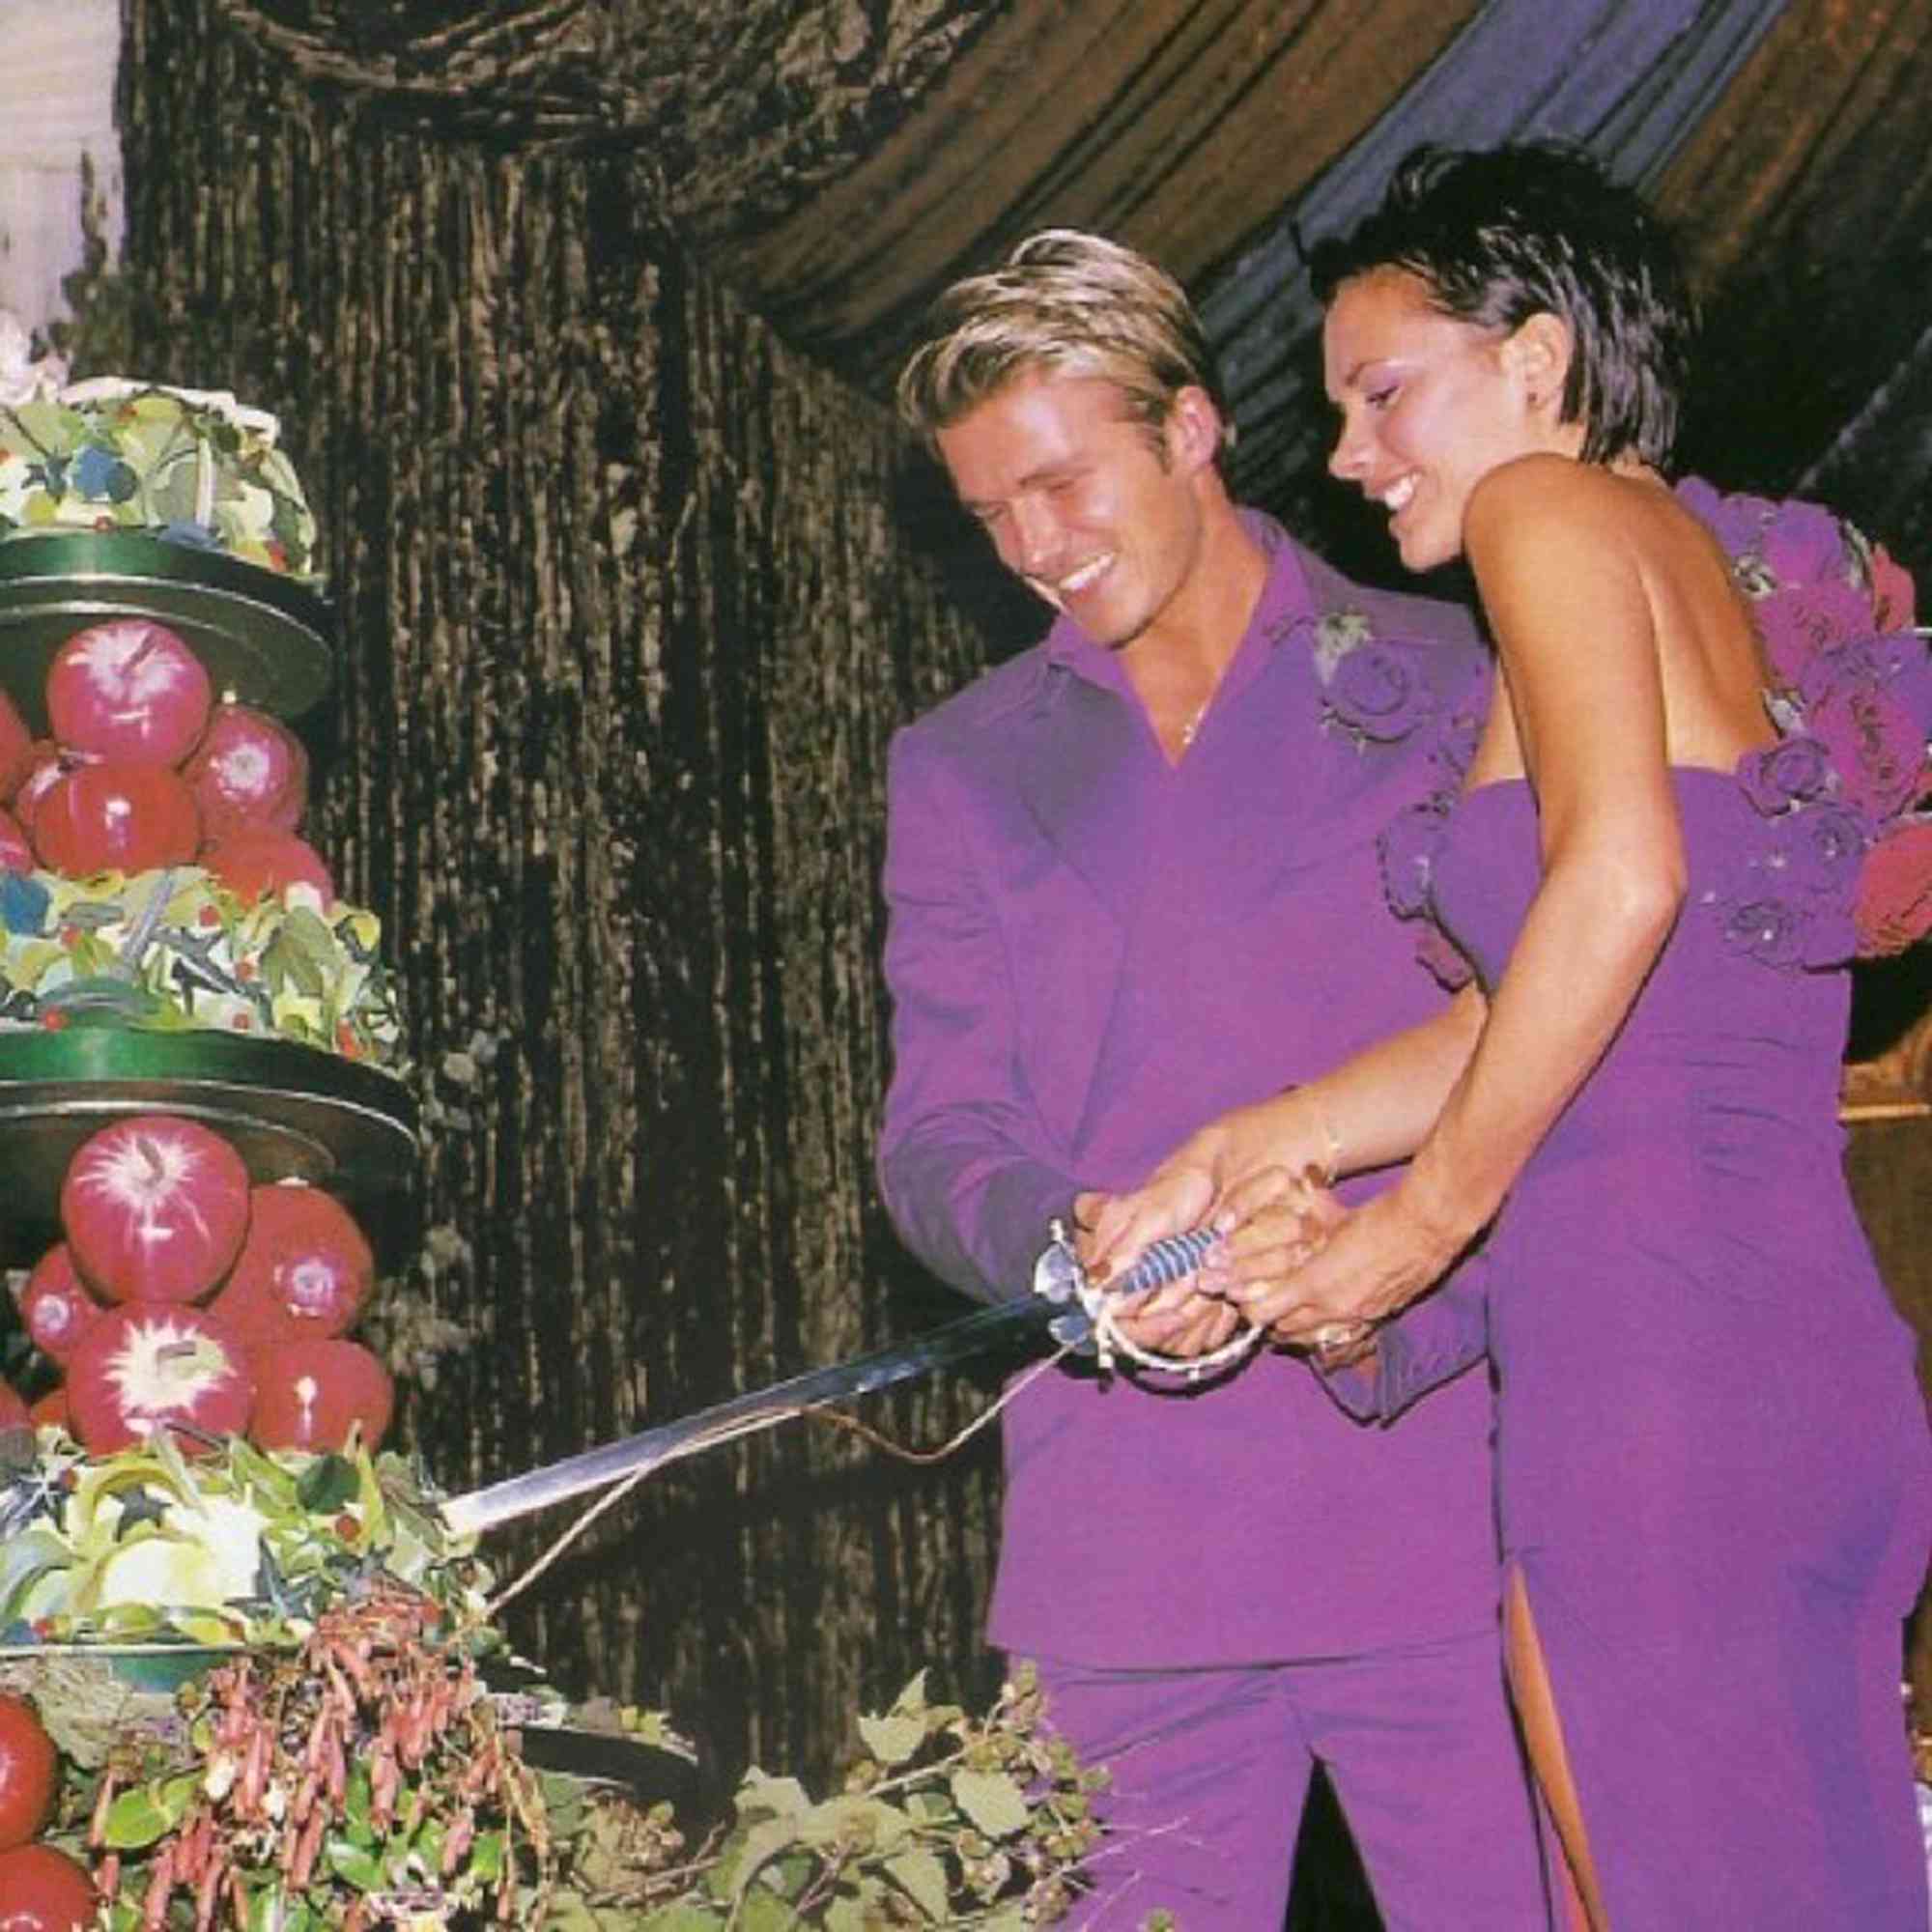 Il matrimonio di David e Victoria Beckham - Fonte: People